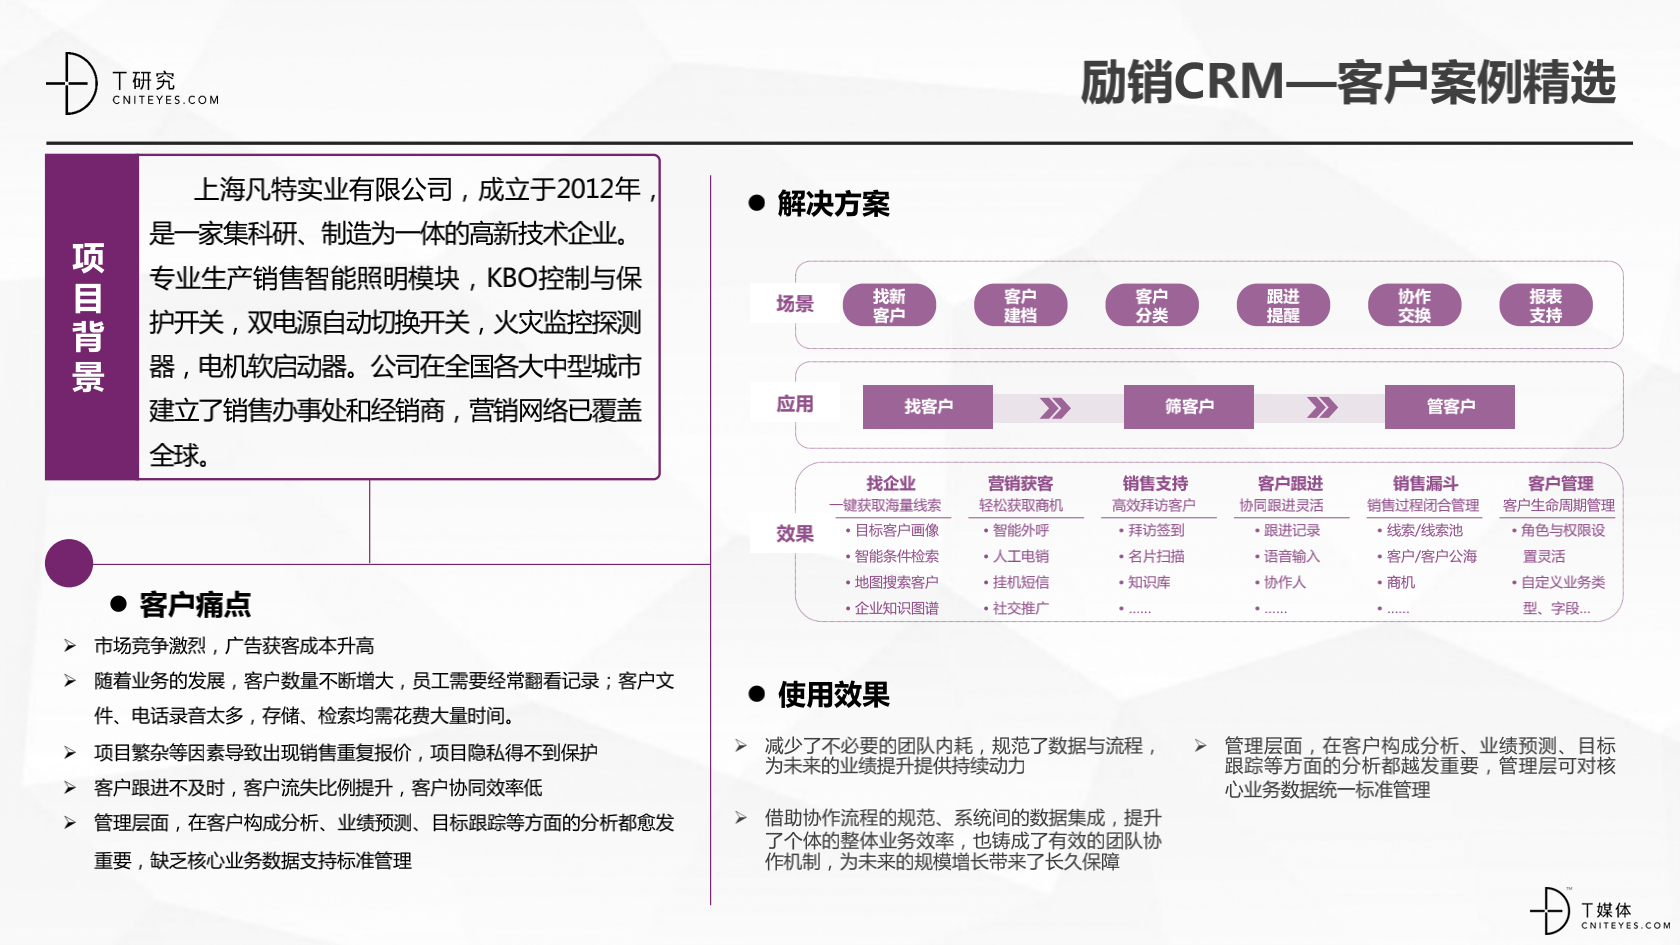 2_2020中国CRM指数测评报告v1.5_34.png